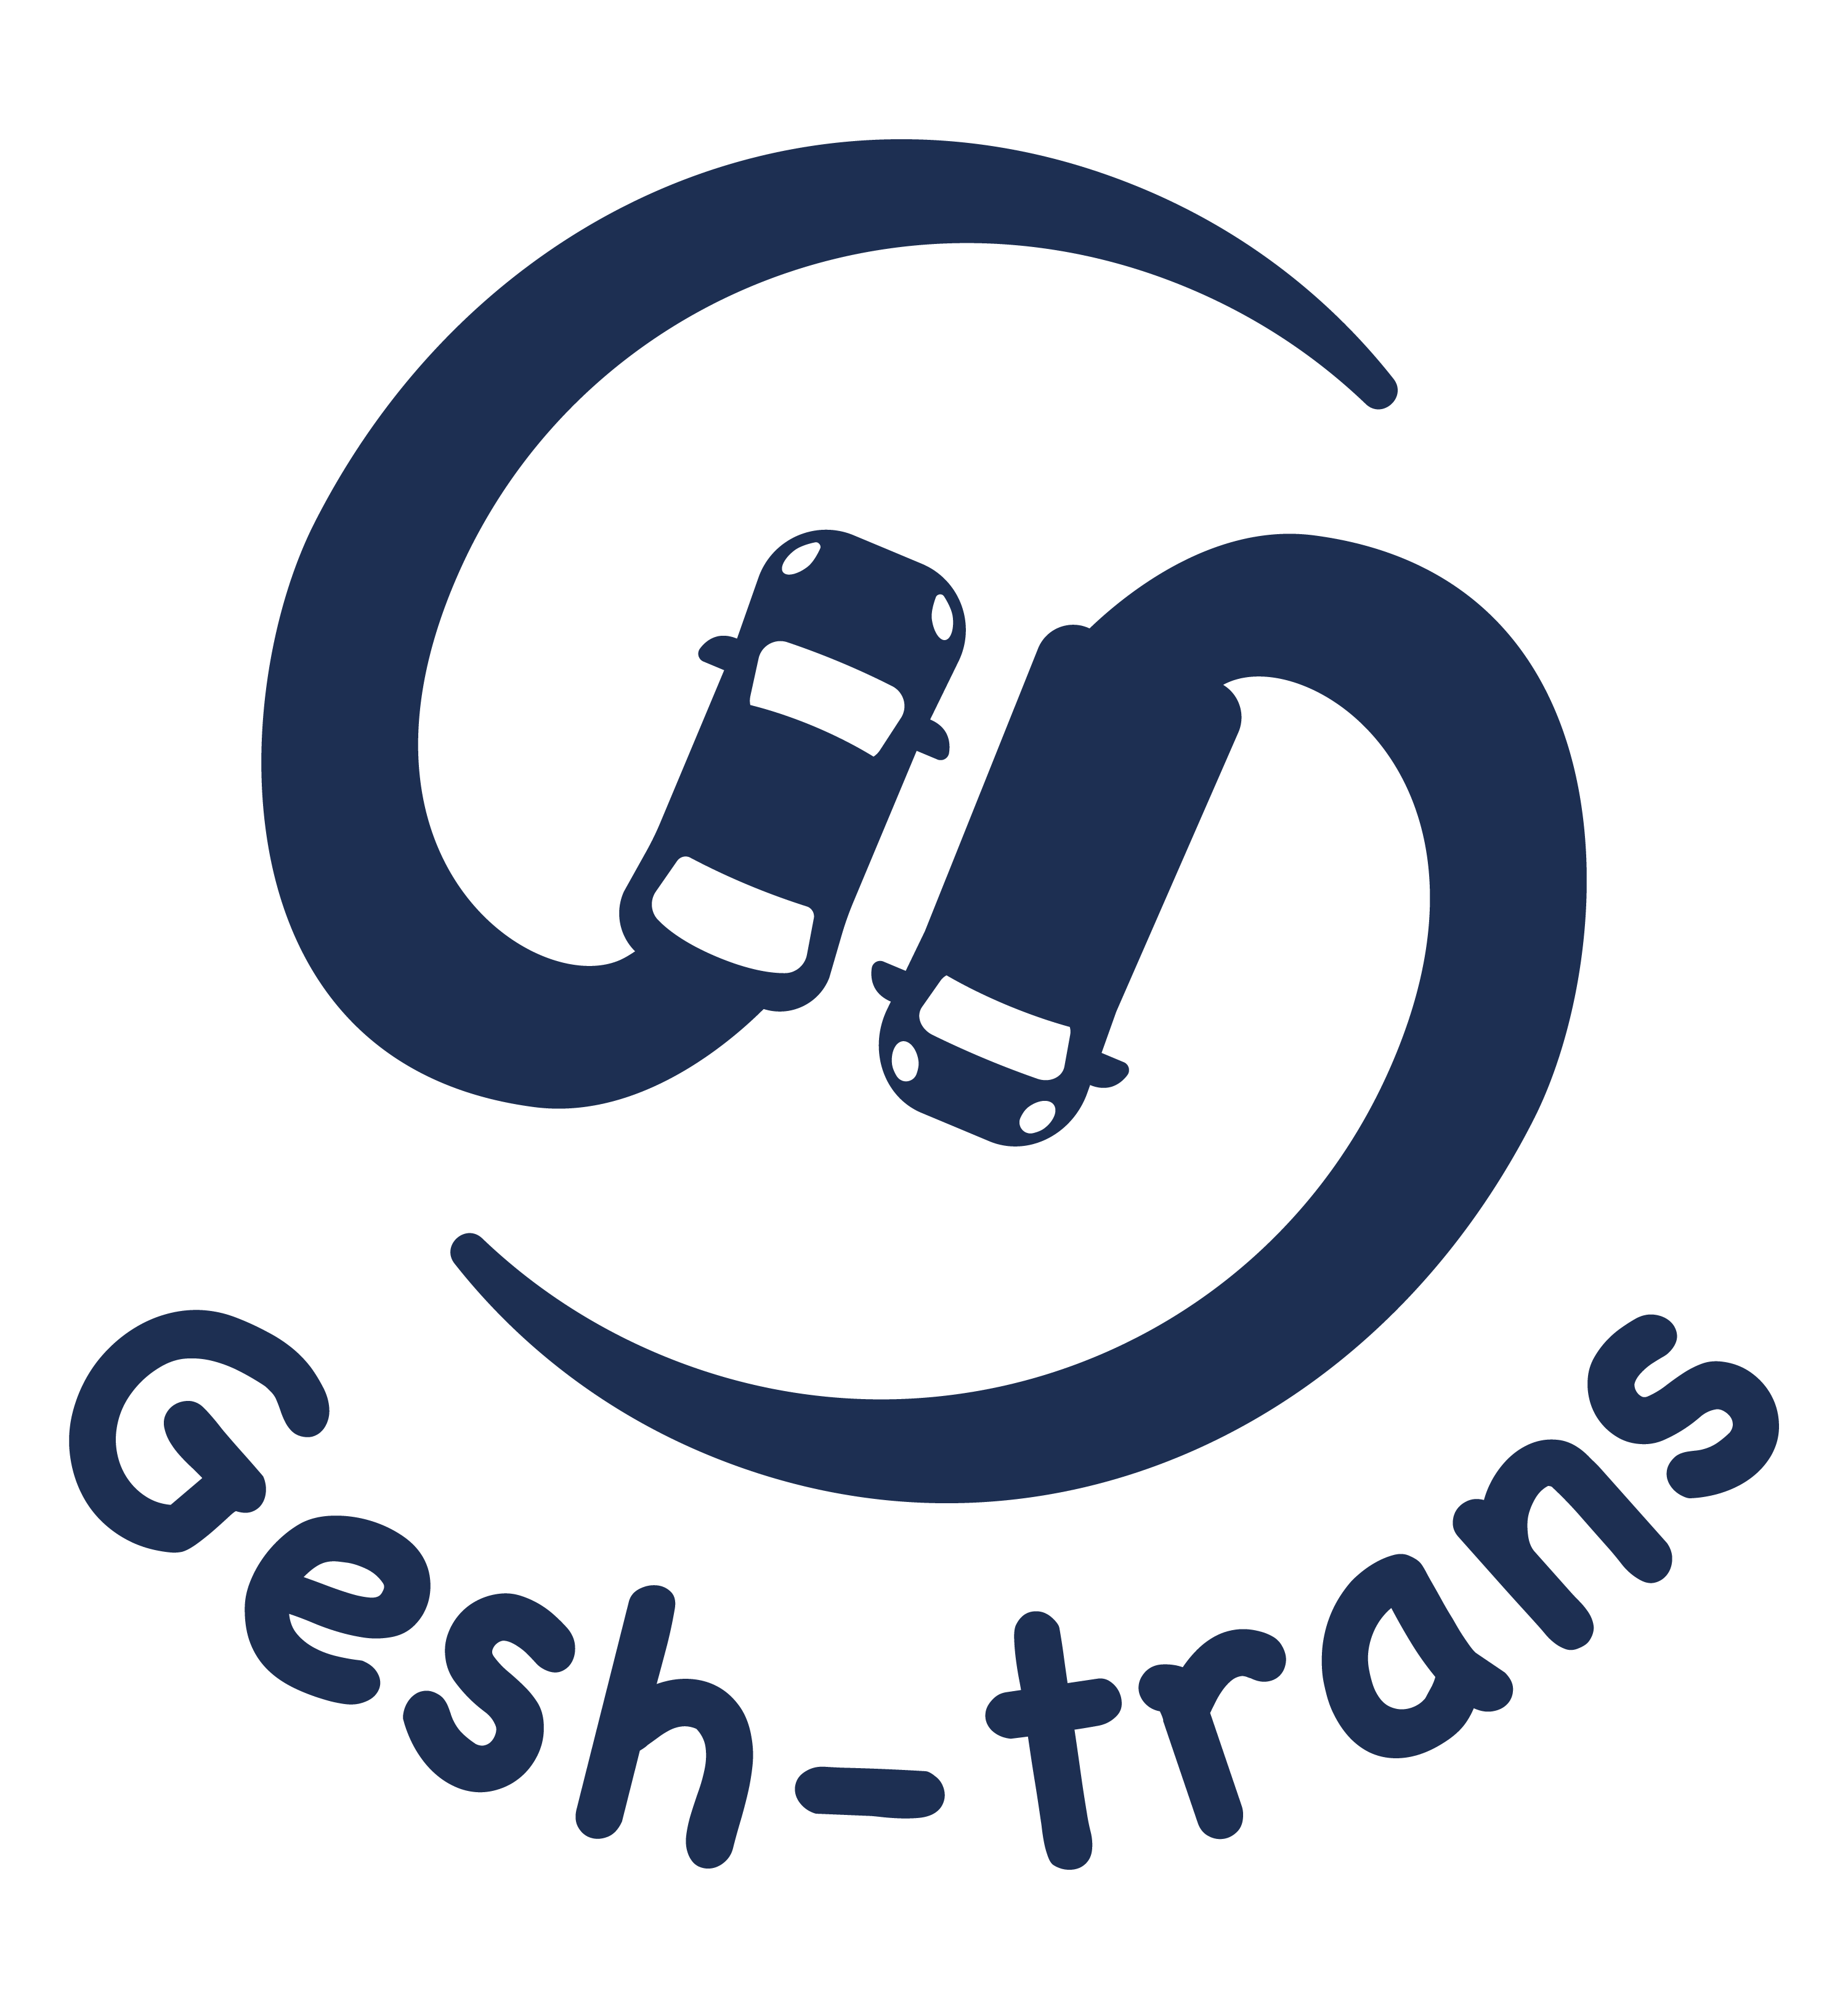 GESH-TRANS